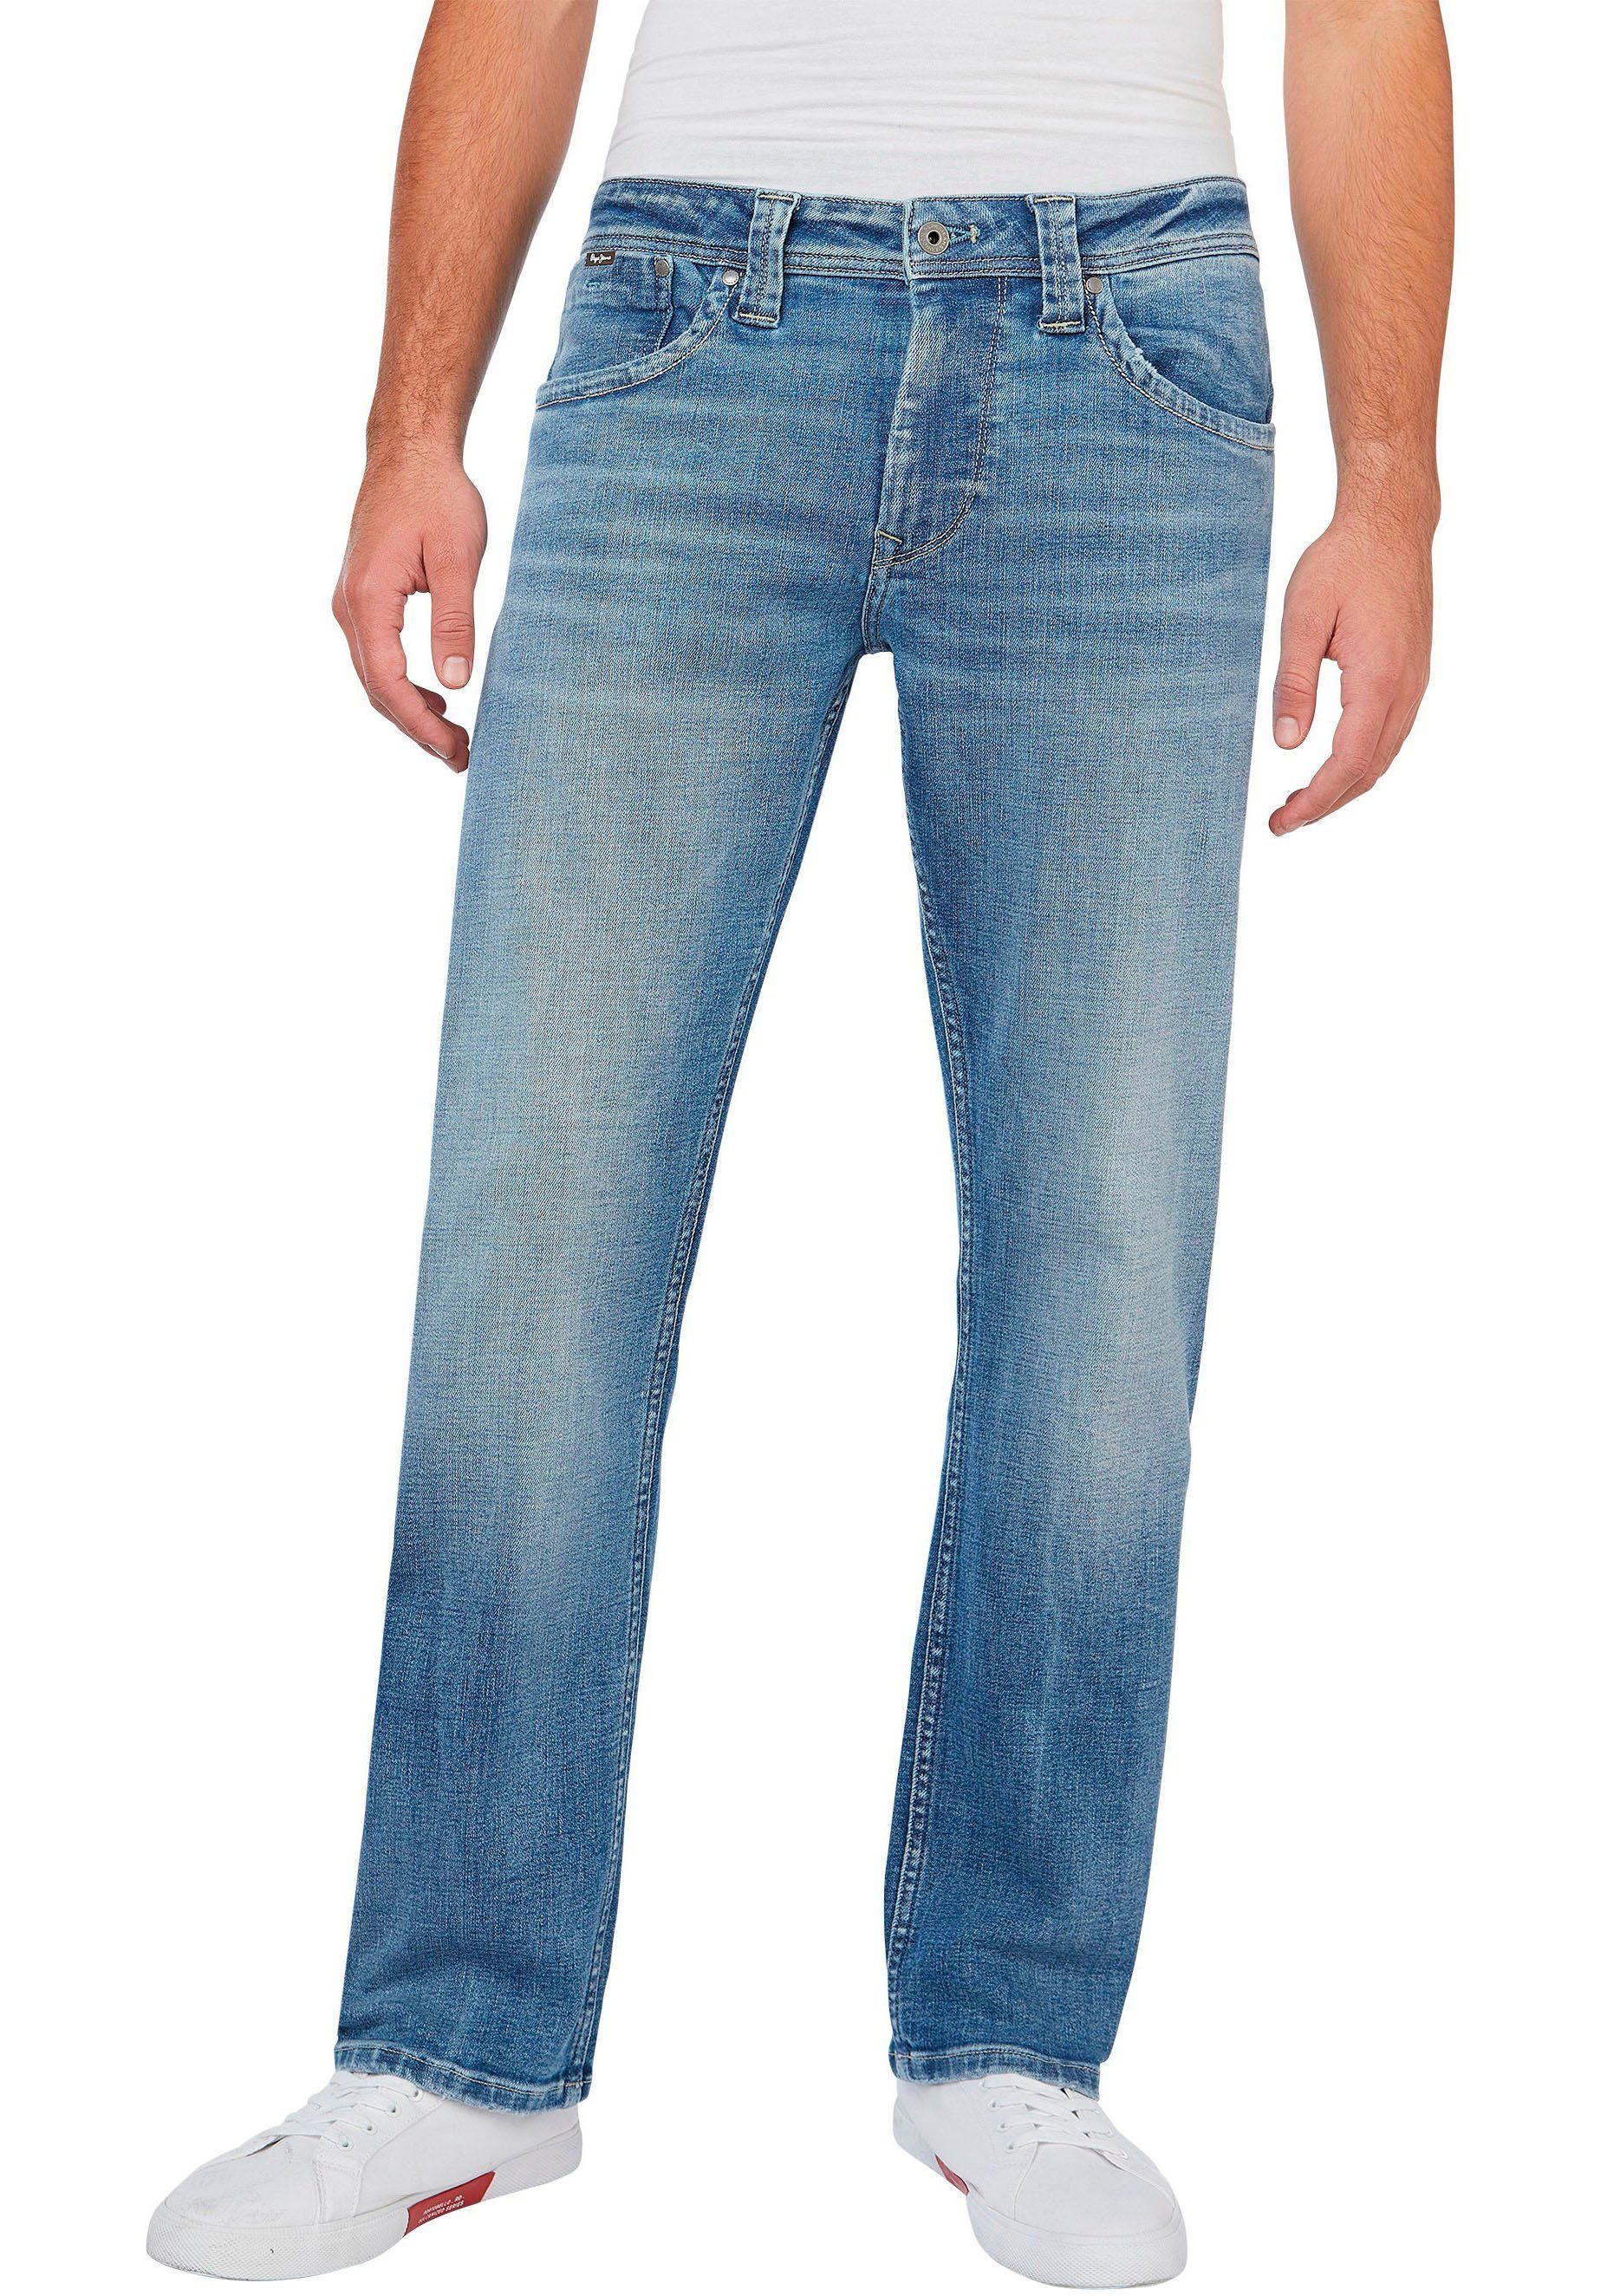 Pepe Jeans lightcross KINGSTON in ZIP 5-Pocket-Form Straight-Jeans